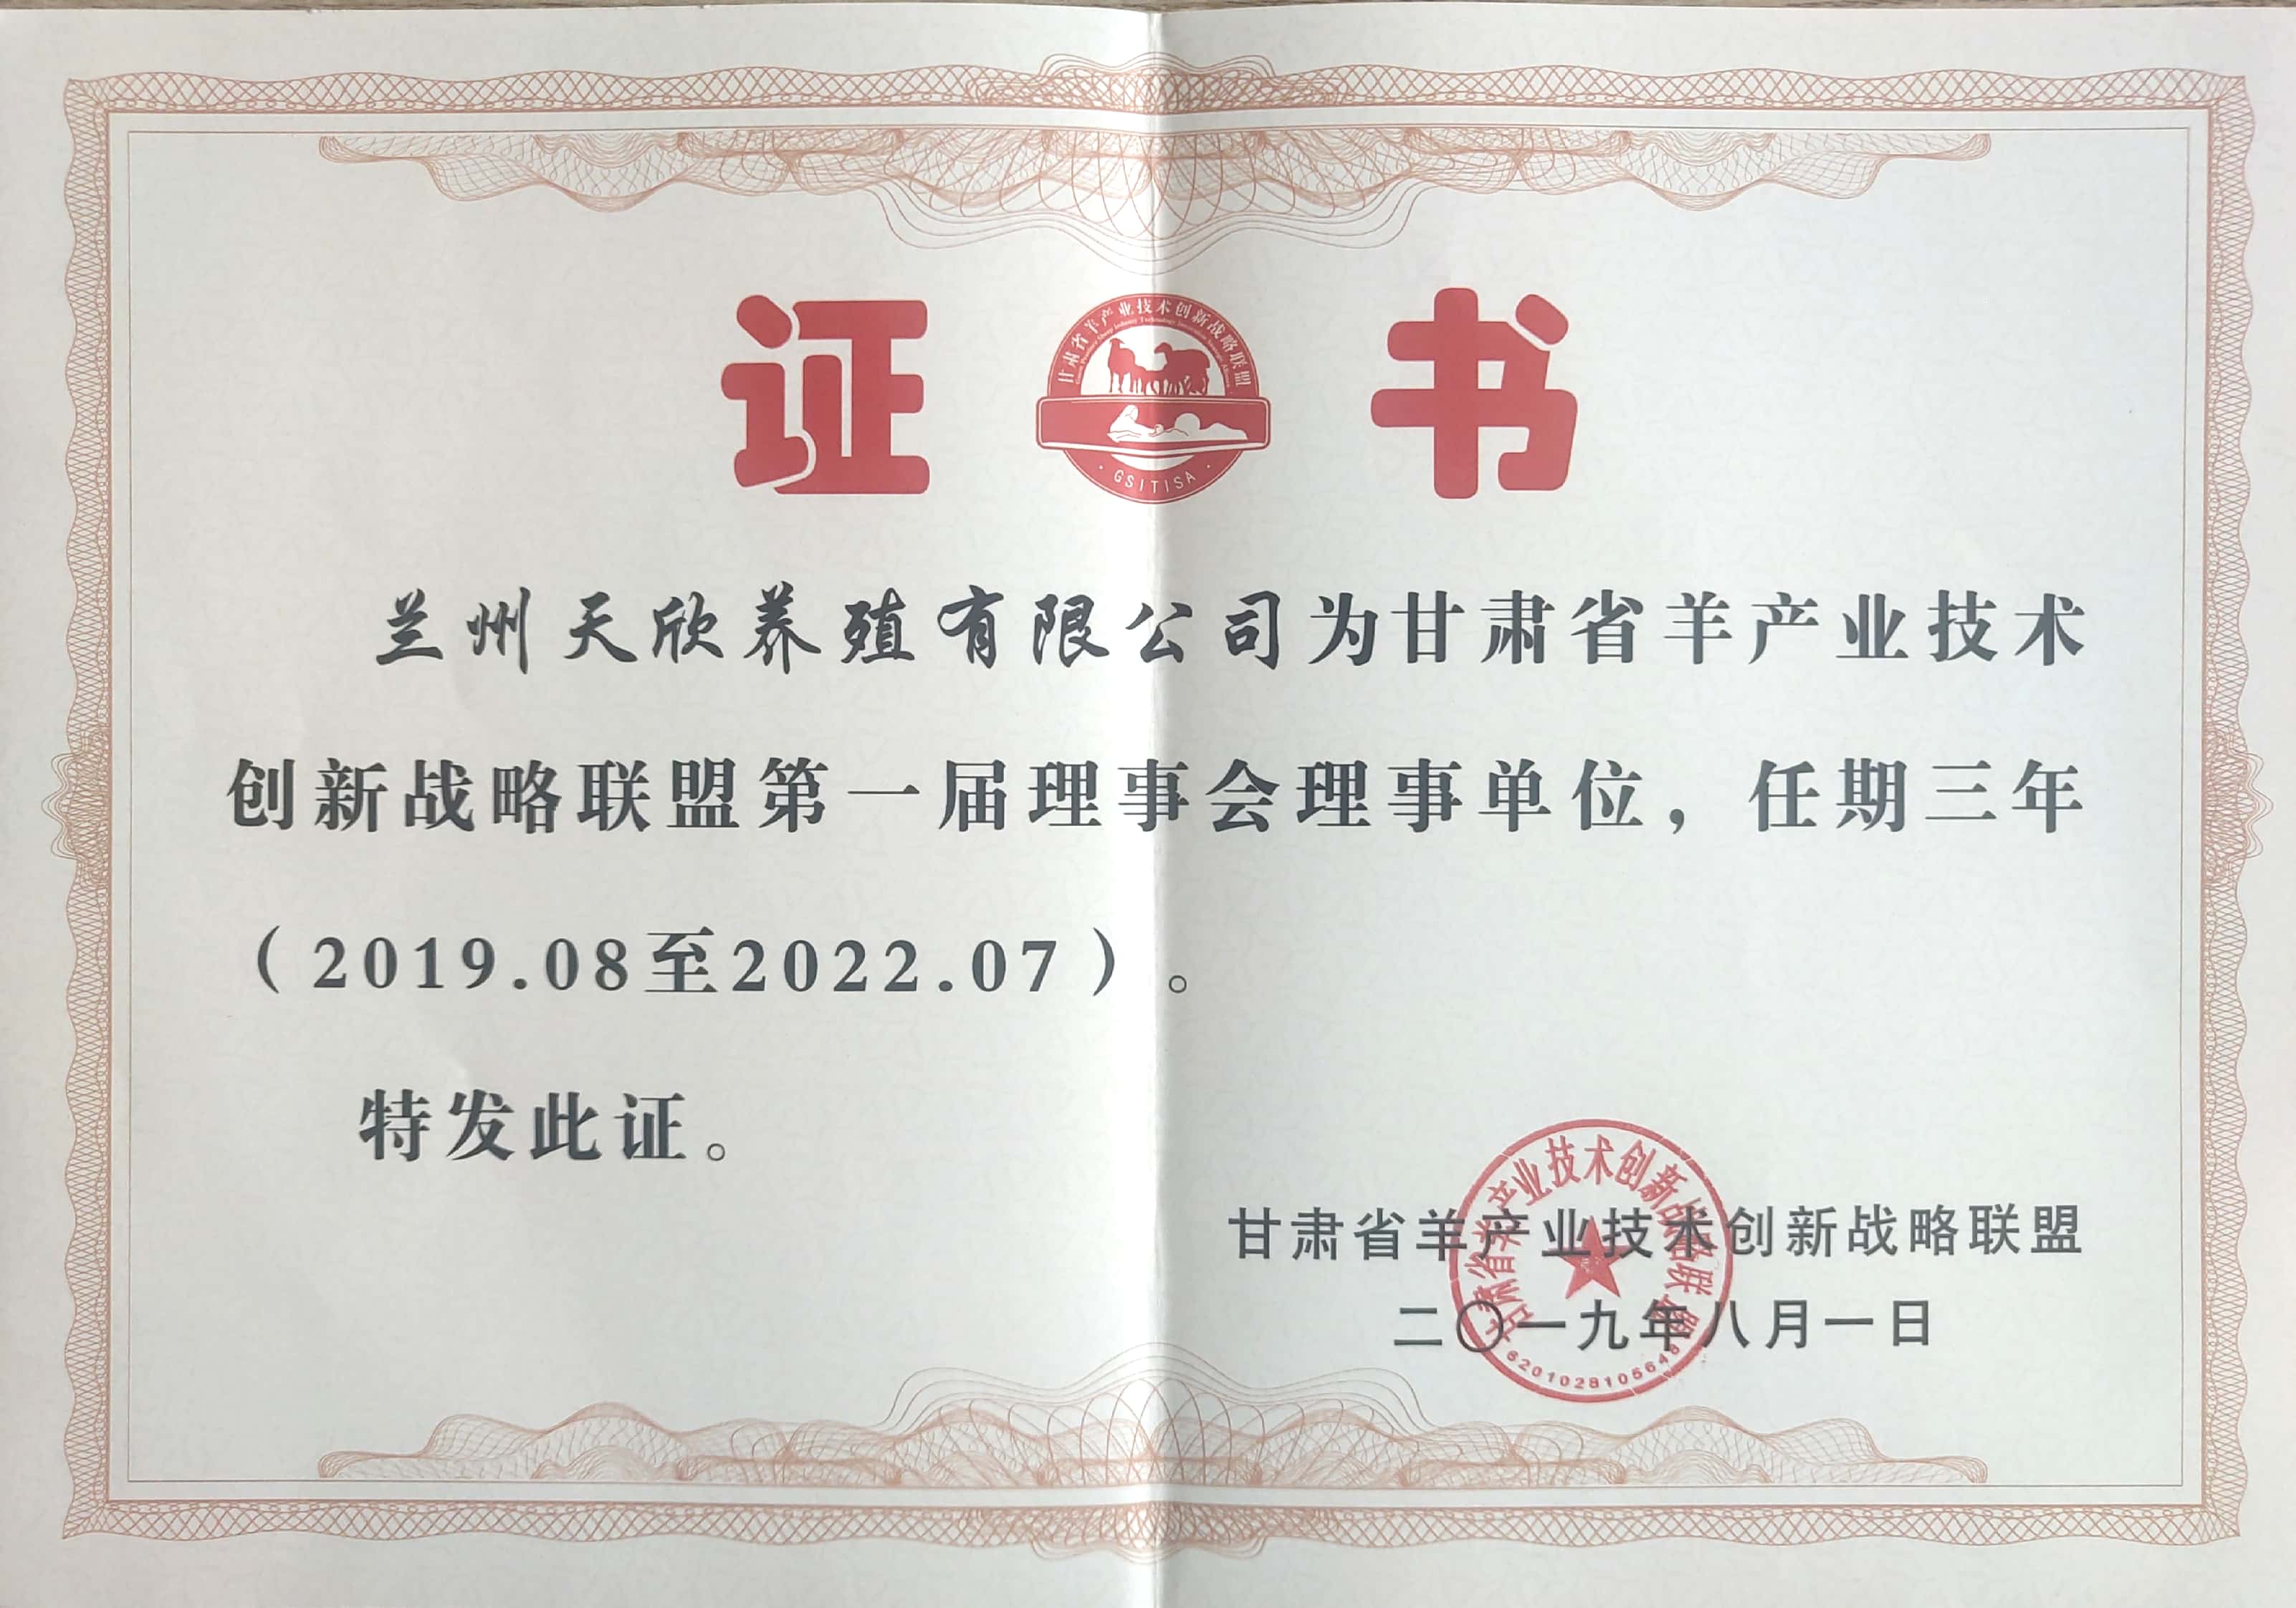 甘肃省羊产业技术创新战略联盟第一届理事会理事单位